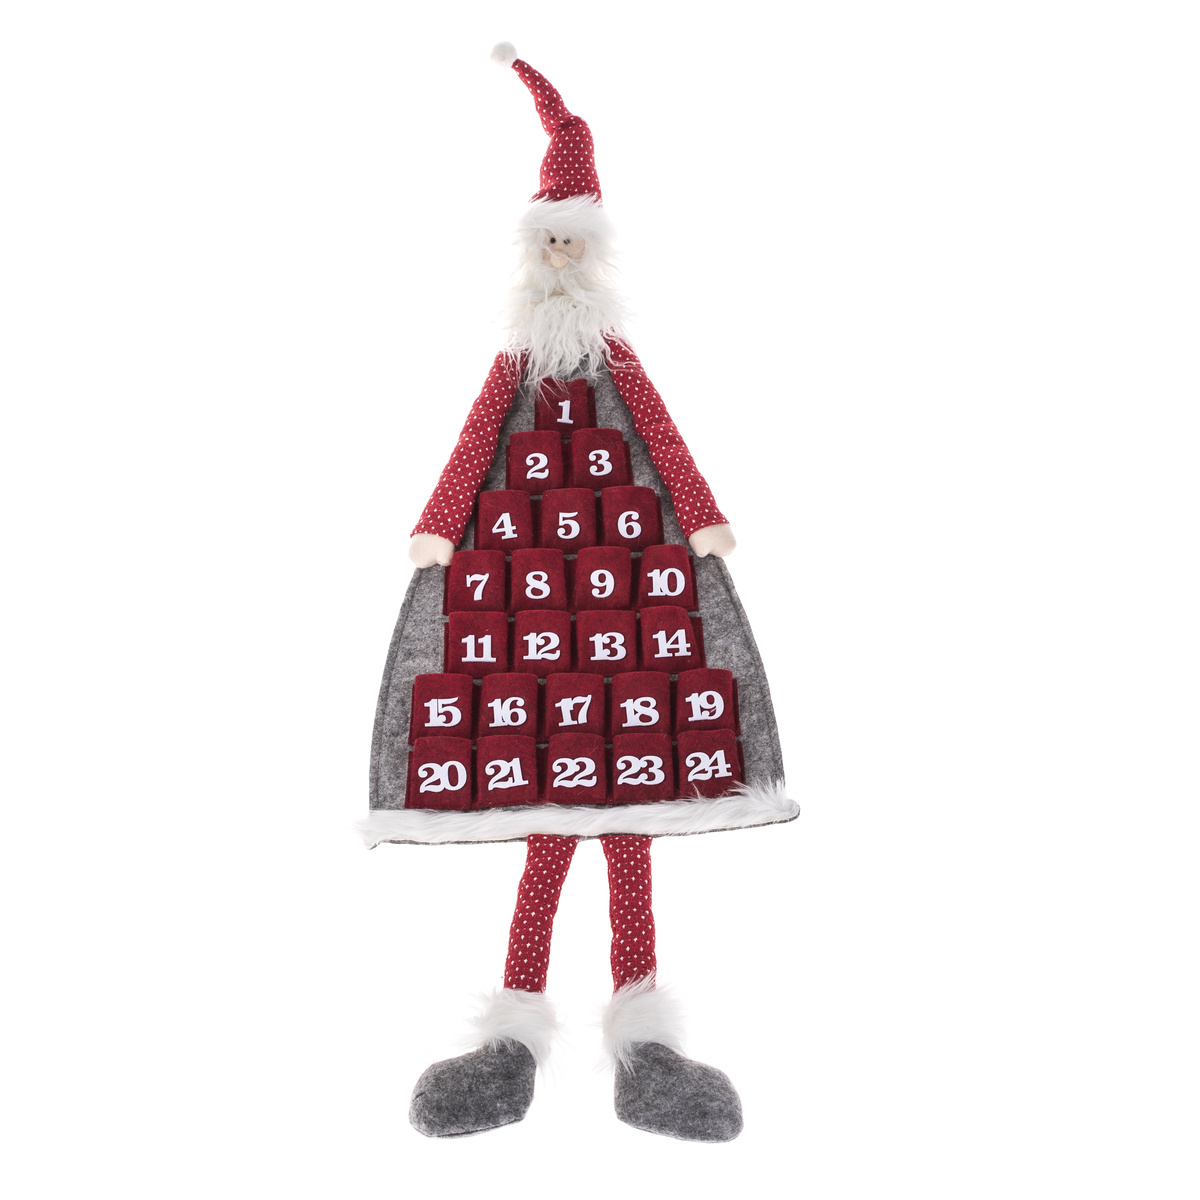 Závěsný adventní kalendář Santa, 110 cm